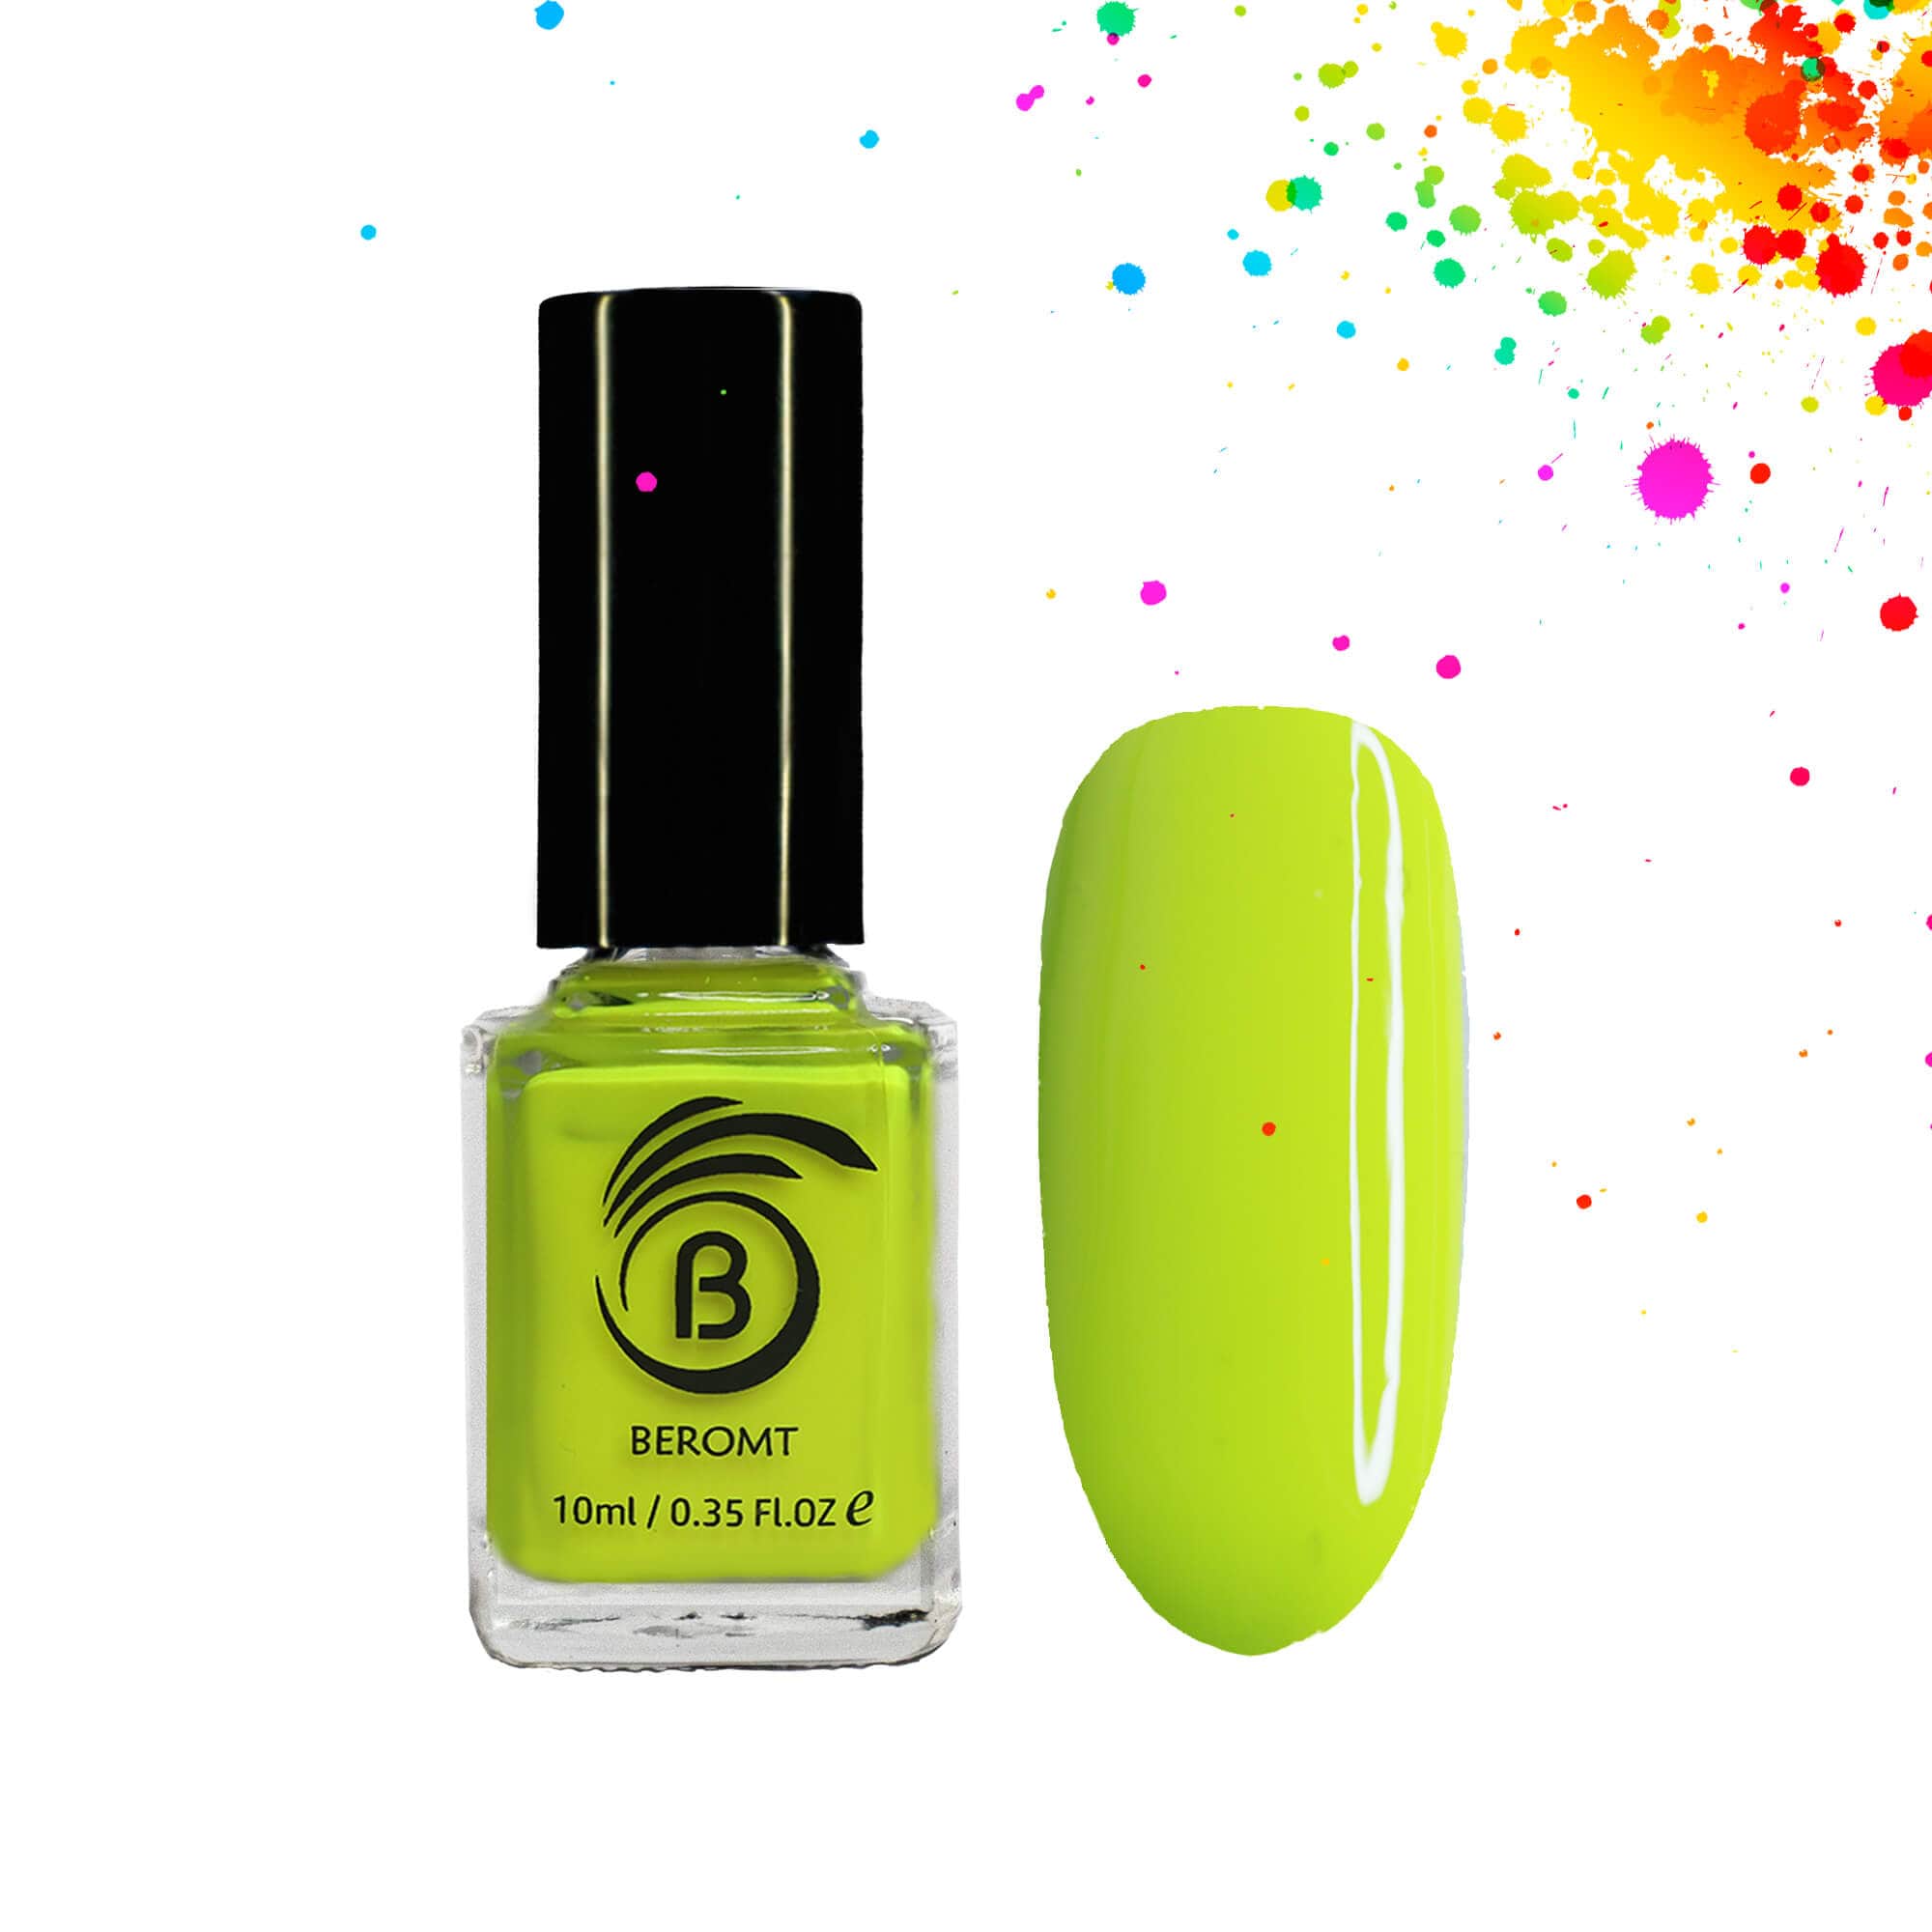 green neon nail polish - SoNailicious